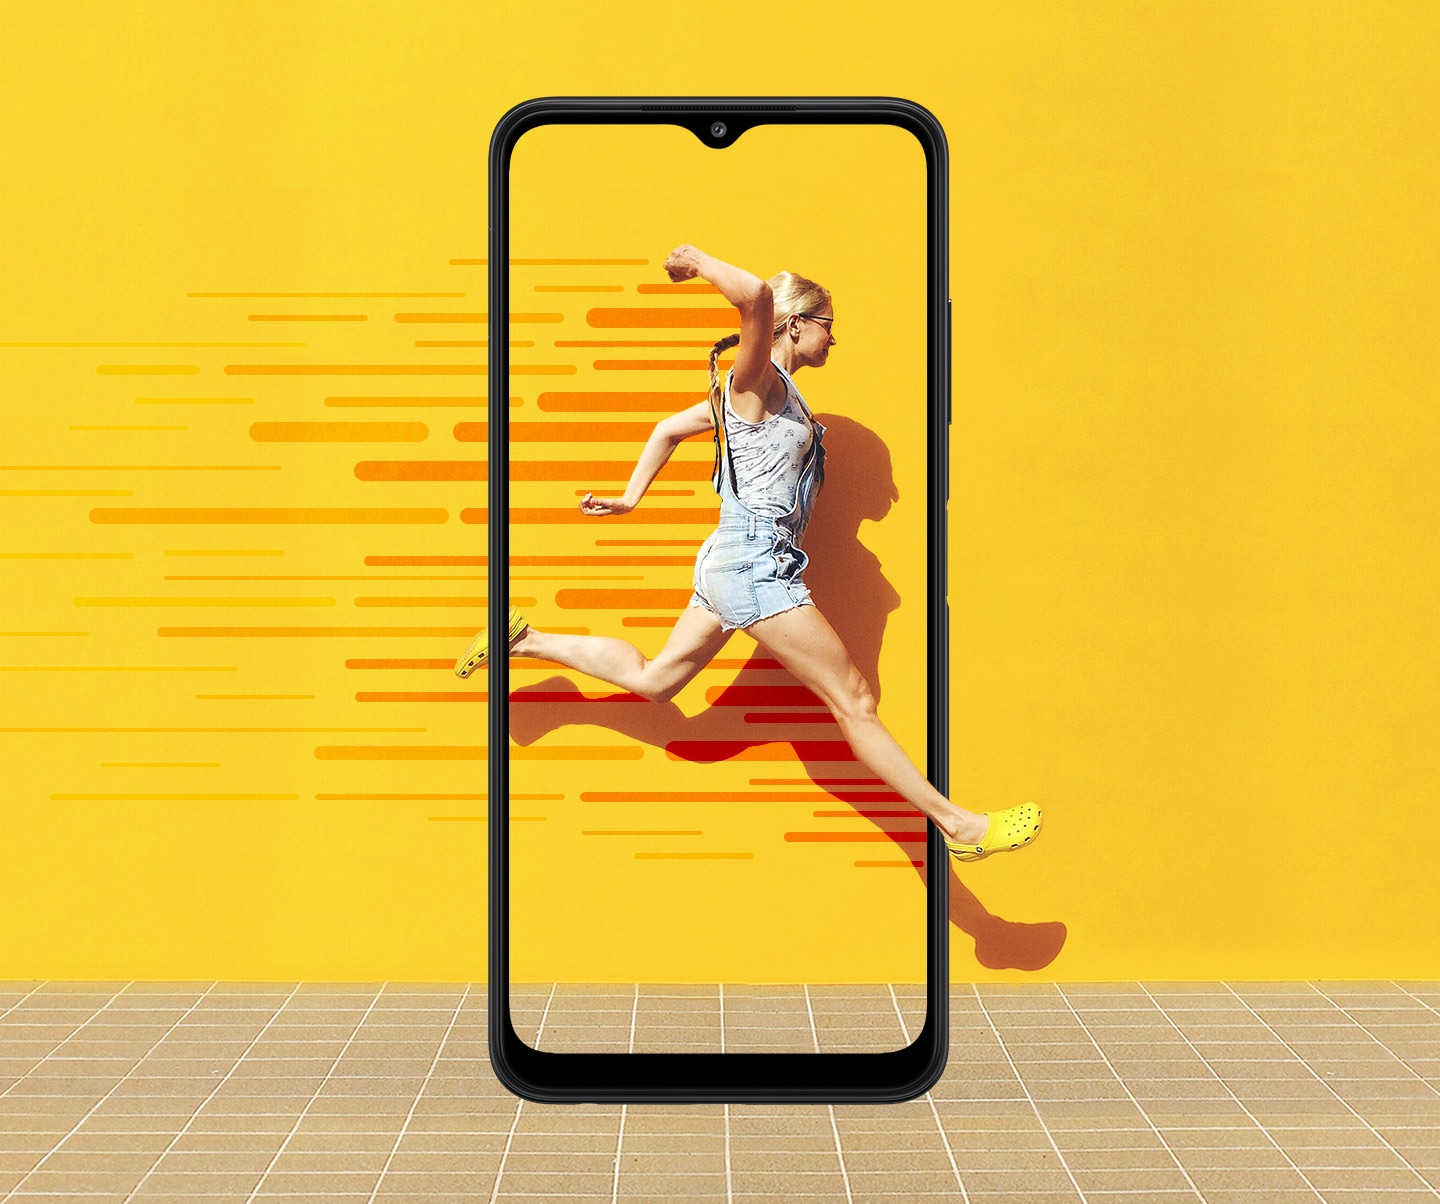 Ein Galaxy A22 5G ist von vorne zu sehen. Auf dem Bildschirm springt eine Frau vorwärts gegen eine gelbe Wand, wobei rote Linien die Bewegung demonstrieren. Ihre Bewegung erstreckt sich über das Display des Smartphones hinaus.